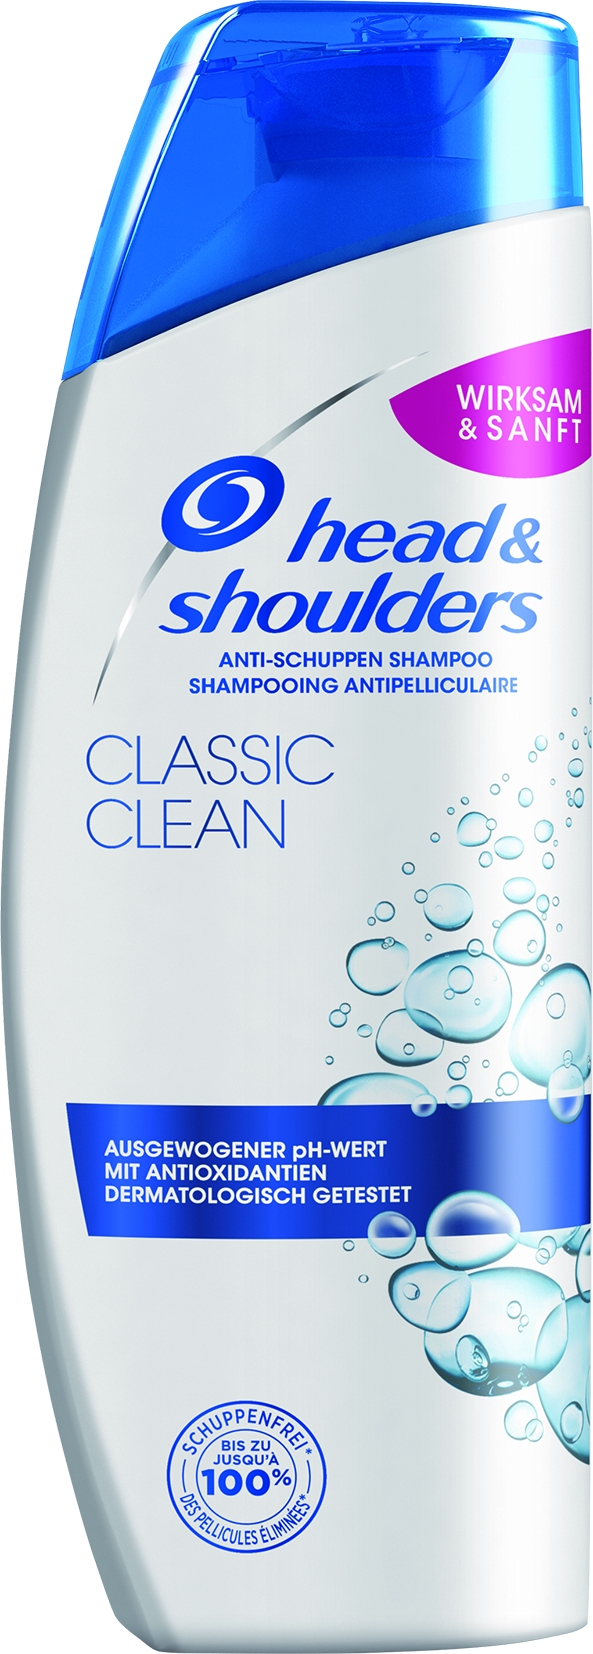 Anti-Schuppen Shampoo Classic Clean   